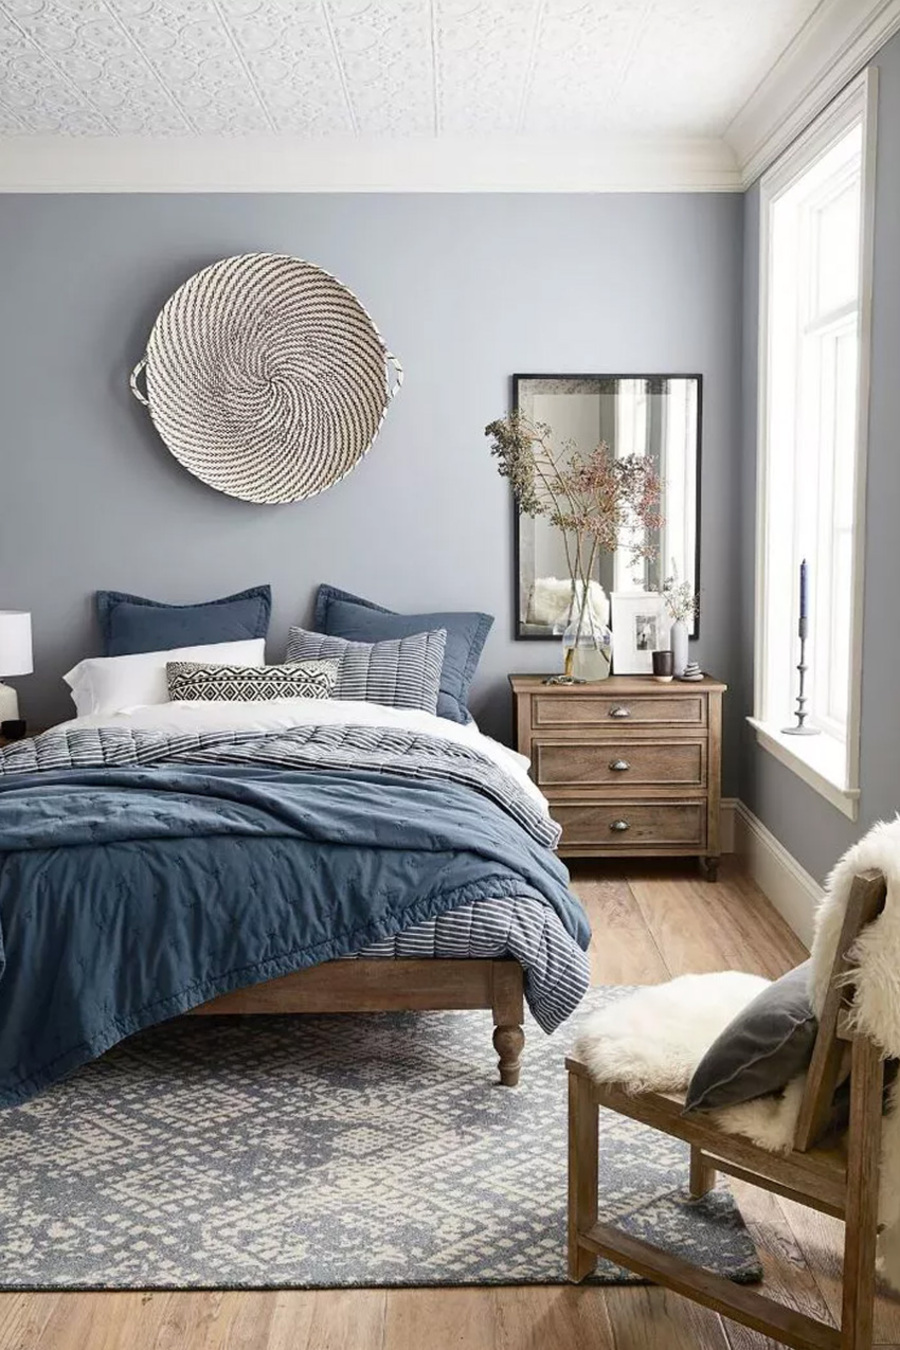 Dormitorio matrimonial con pared azul grisáceo claro, techo blanco y piso de madera clara. Hay una alfombra en tonos grises y crema, una cama de madera sin respaldo y con ropa de cama azulados y grises. Hay un velador de madera con tres cajones y un espejo sobre él, colgando de la pared. 